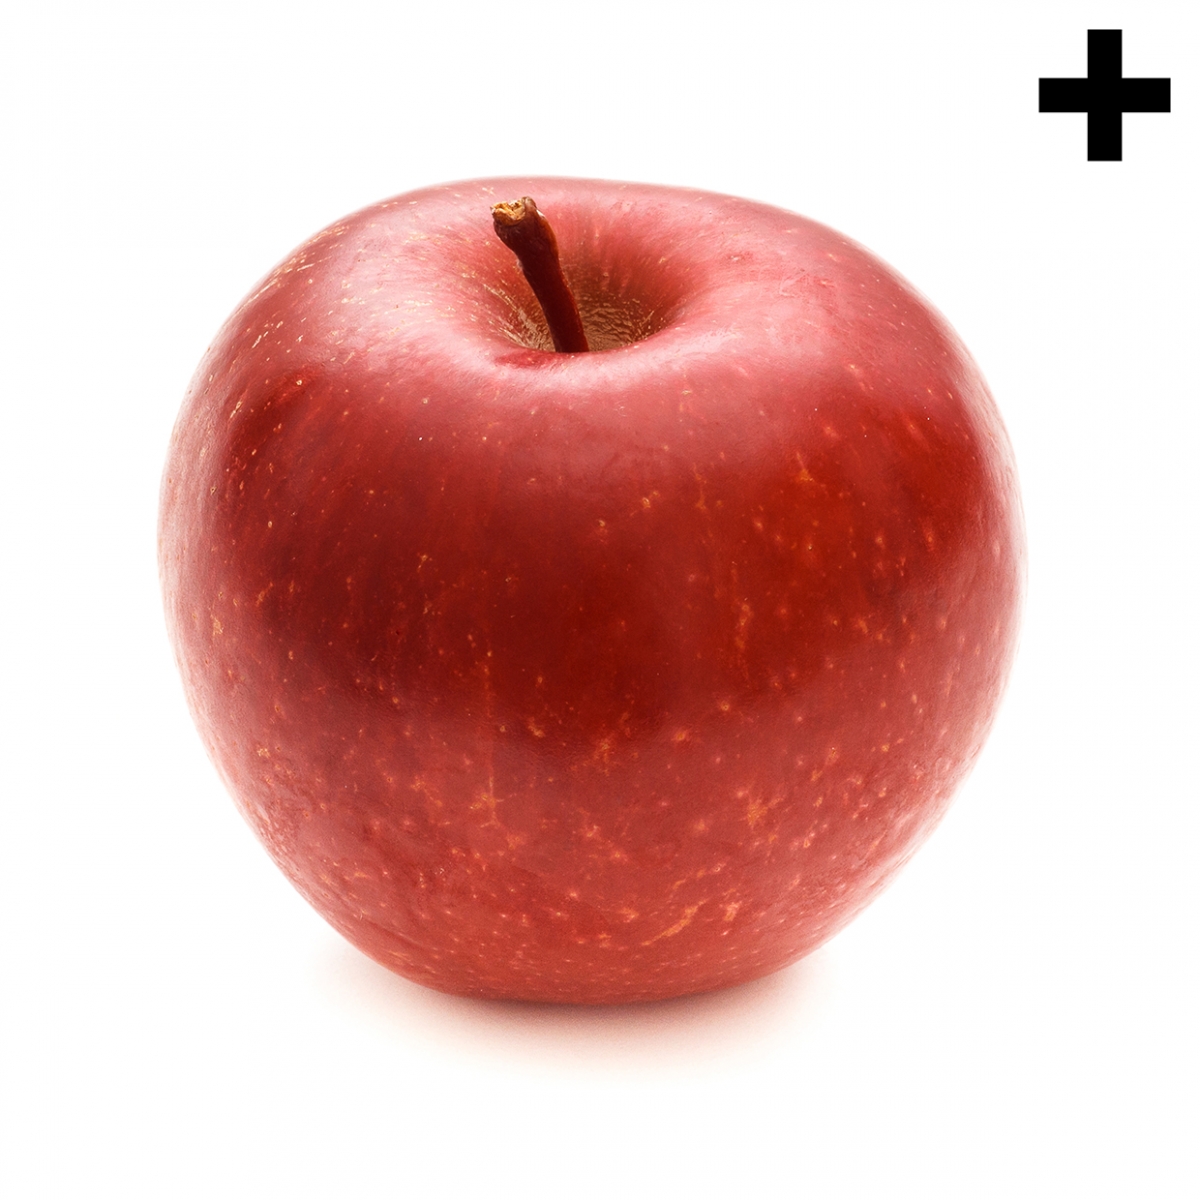 Imagen en la que se ve una manzana roja